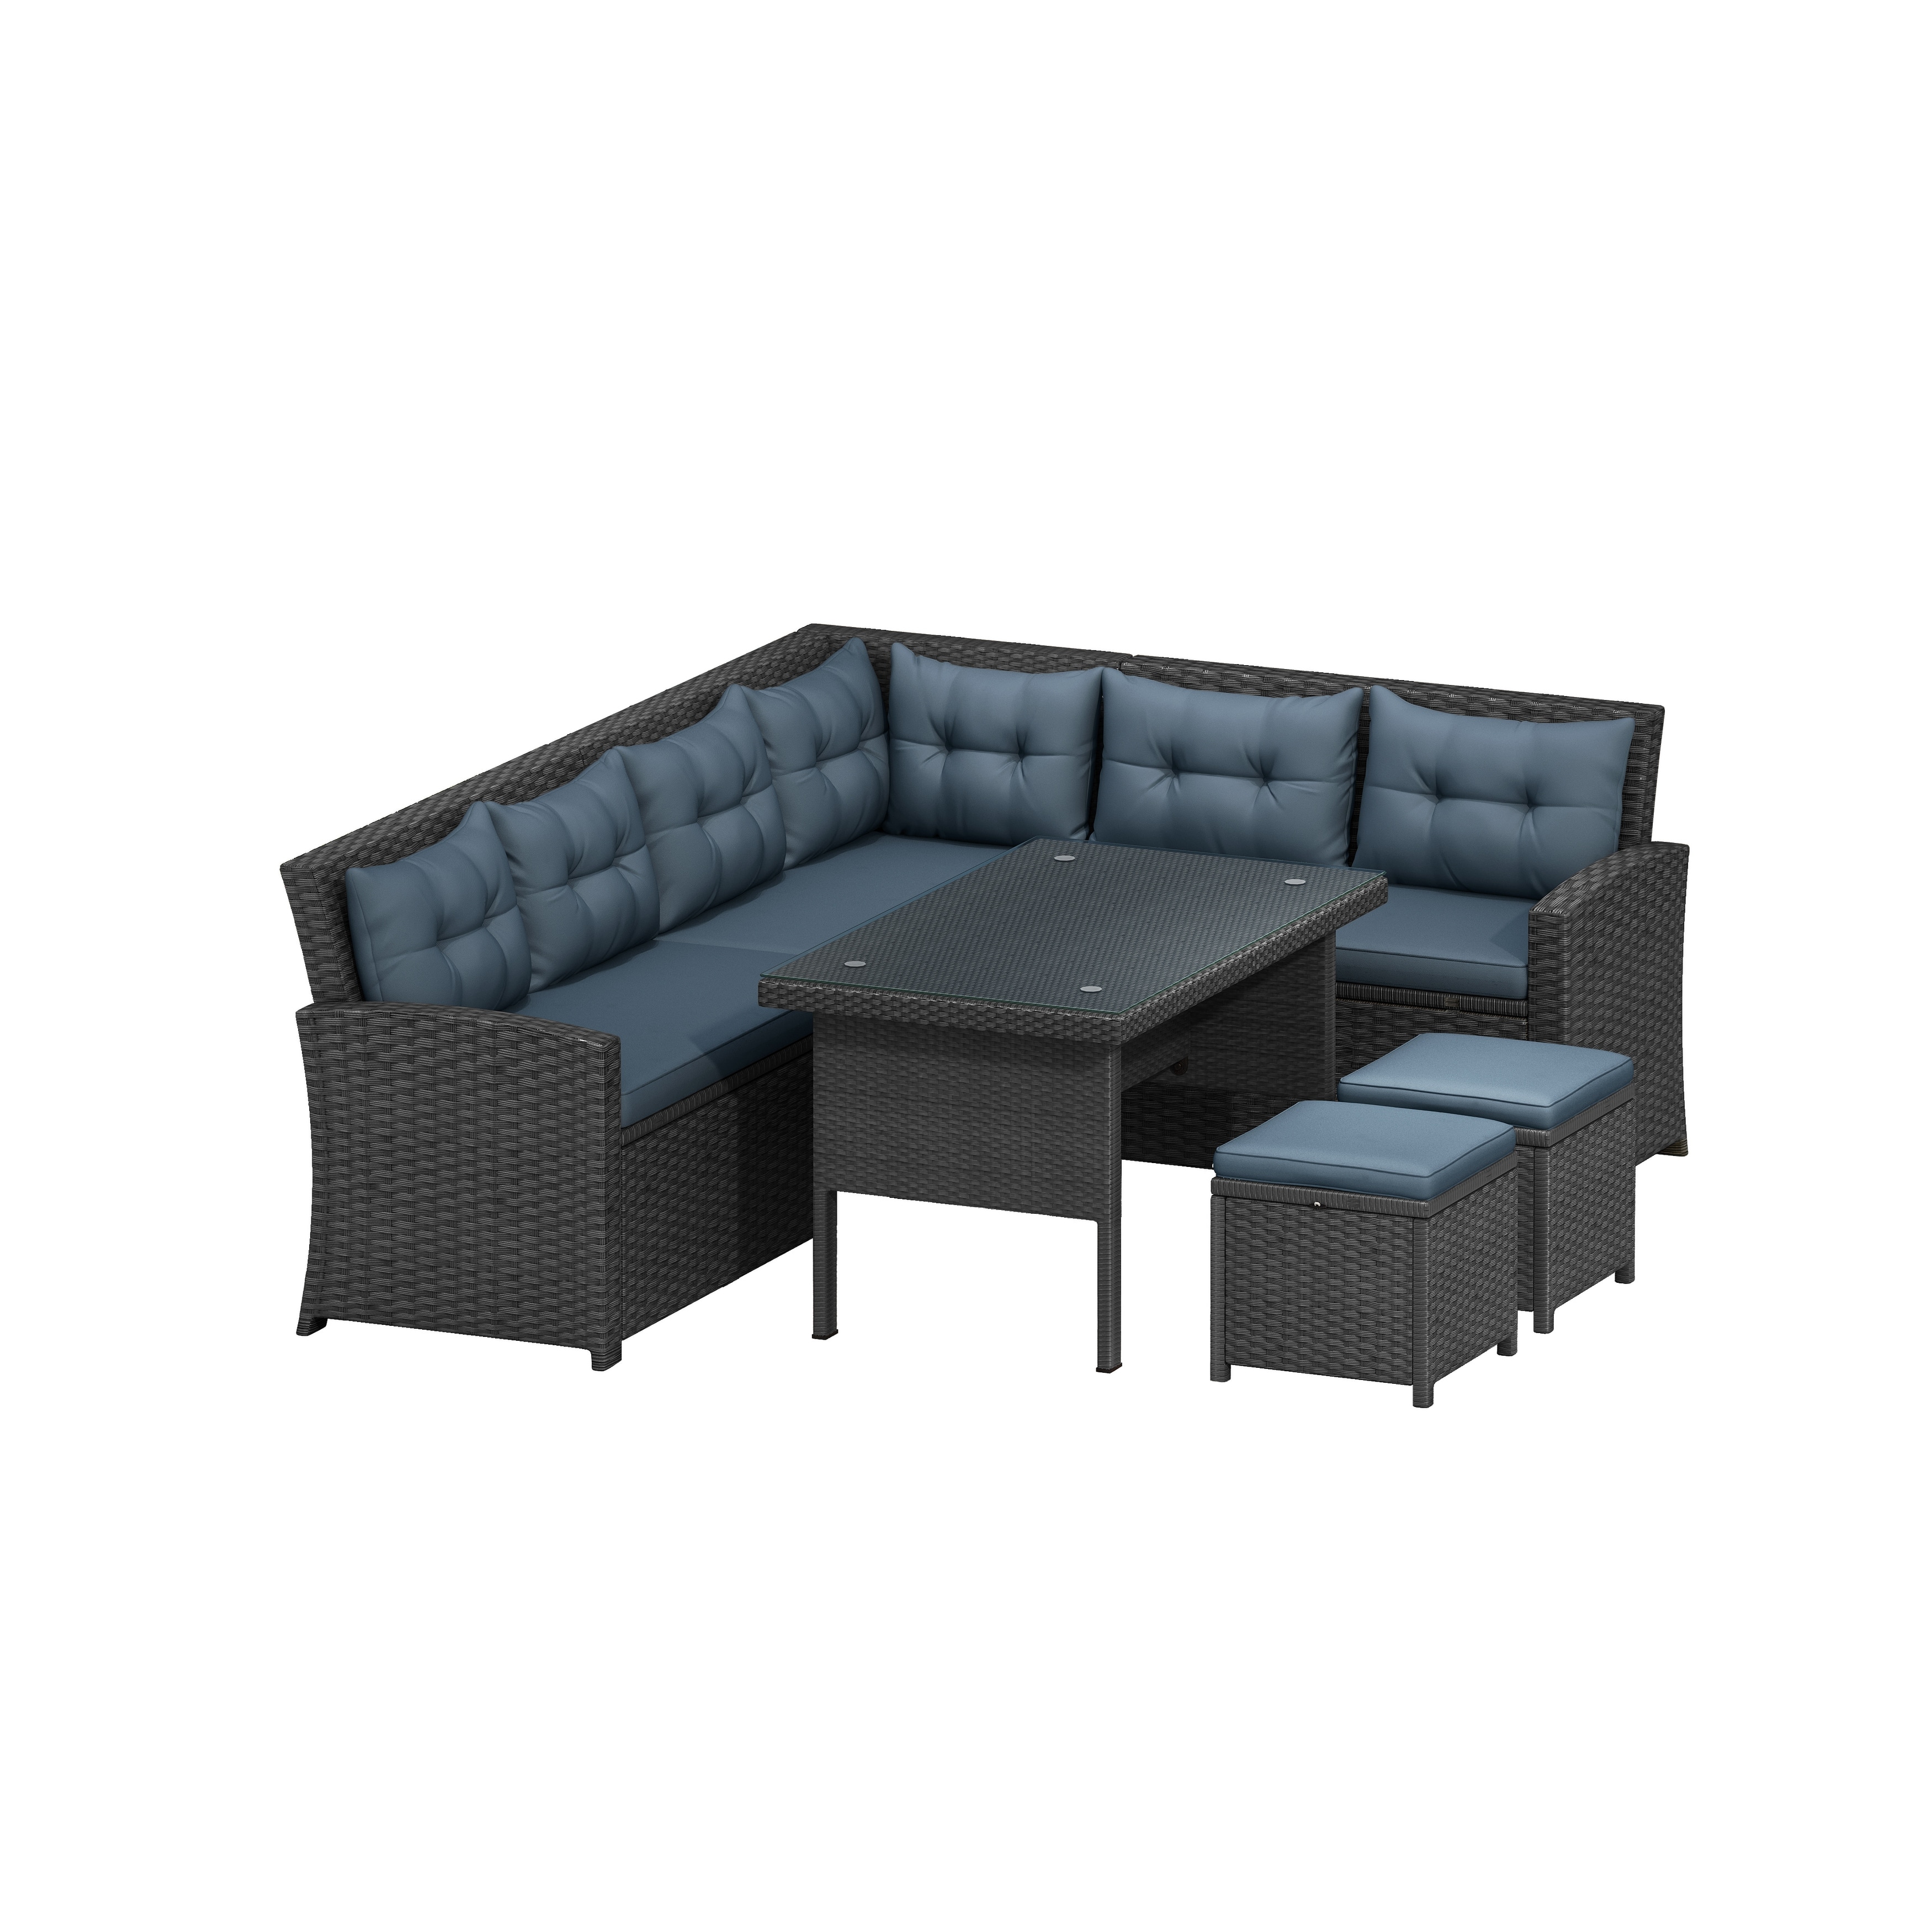 6-piece Patio Furniture Set